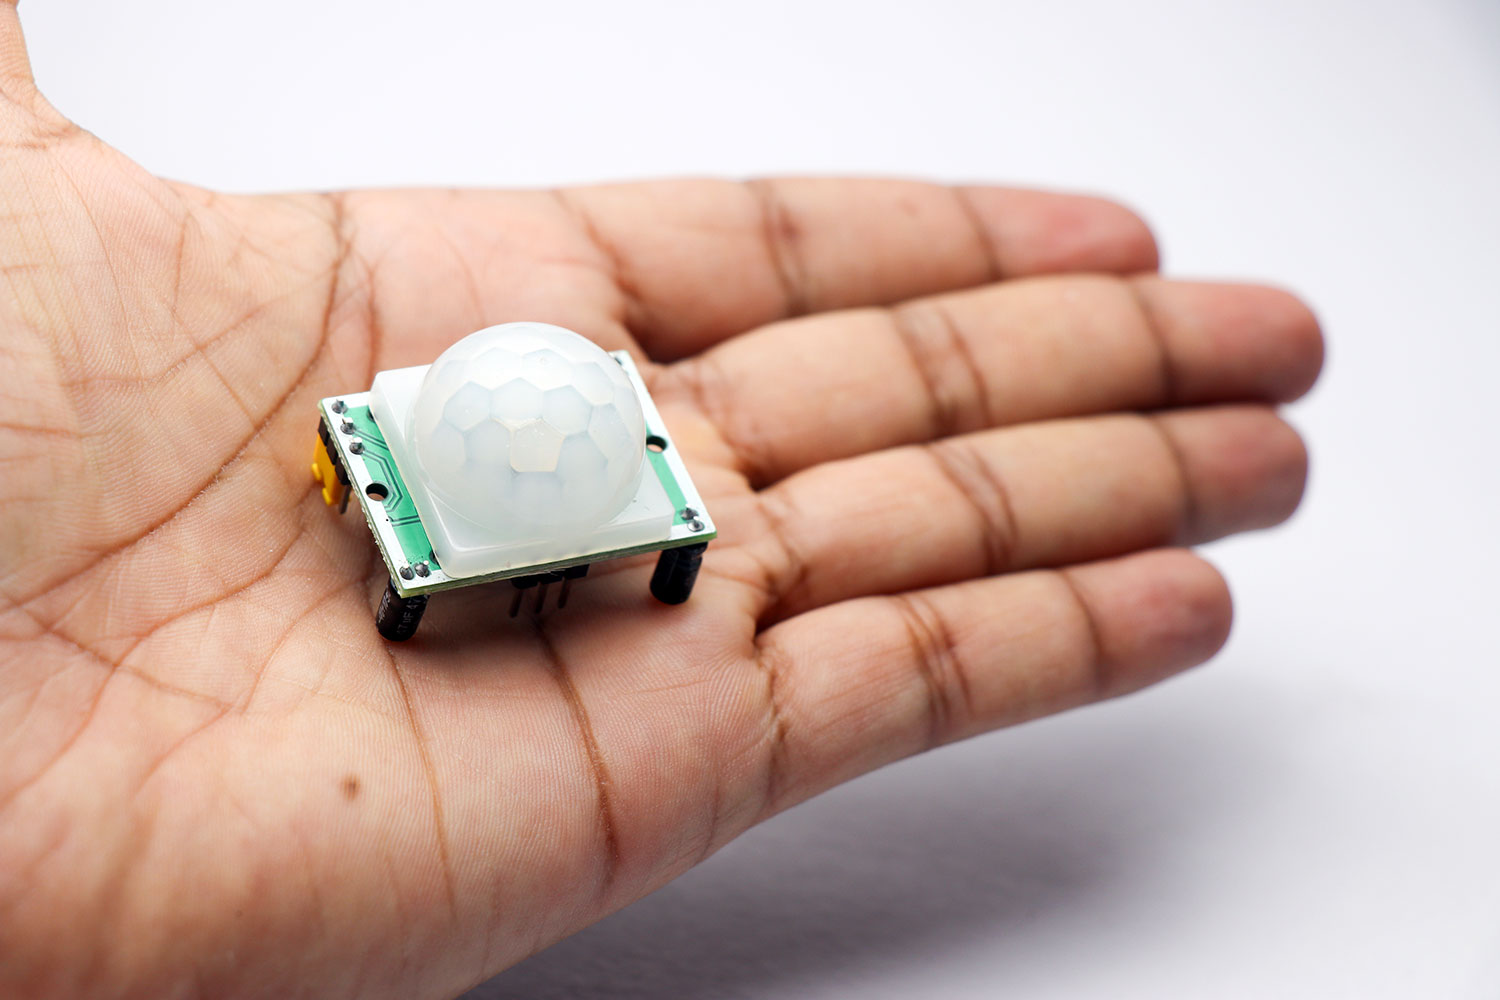 Módulo de sensor infrarrojo pasivo (PIR) para la detección de movimiento en proyectos de robótica. Getty Images.